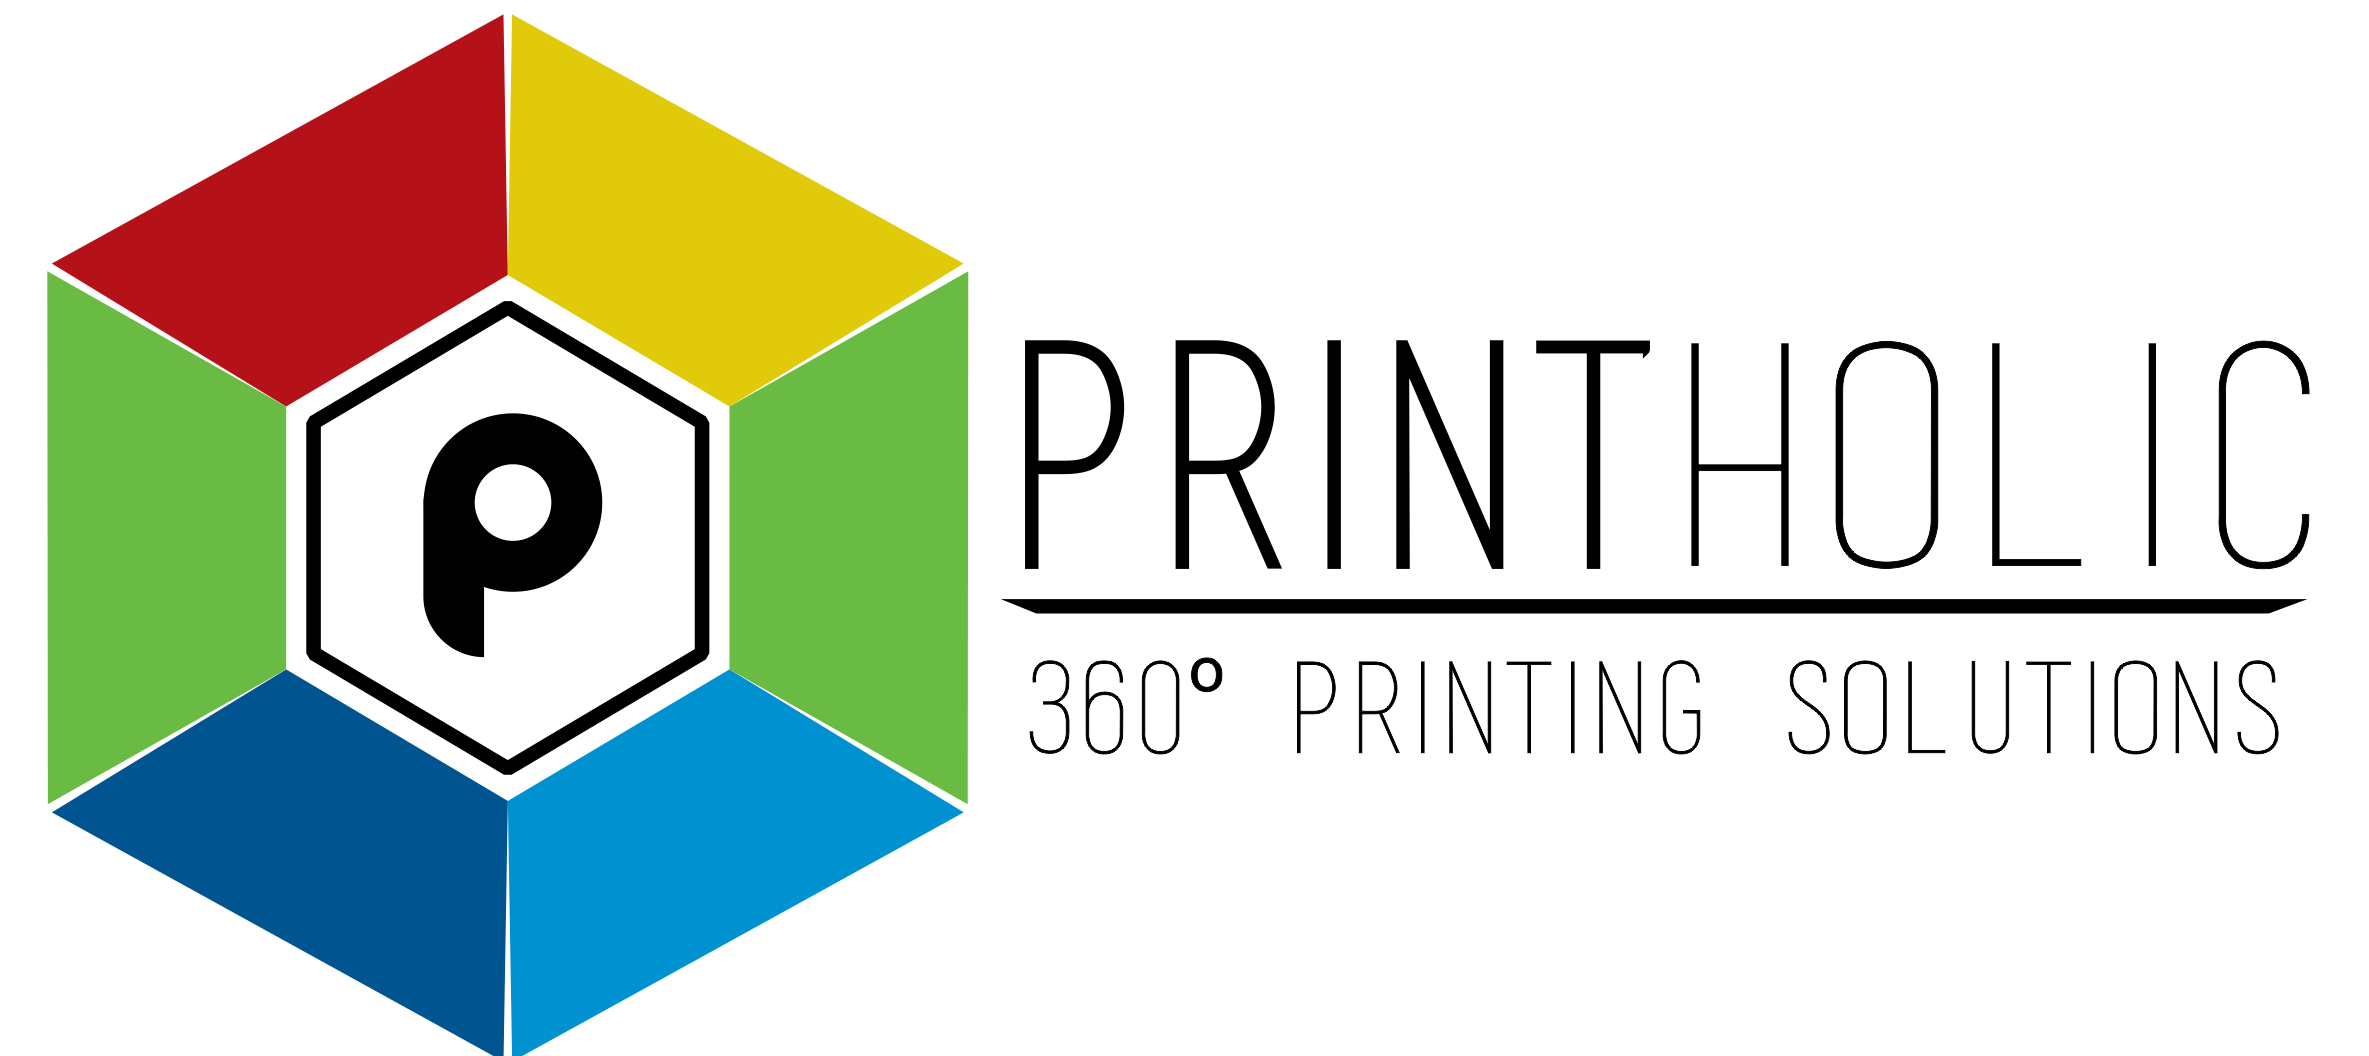 Graphics Printing Logo - T-Shirts Printing services, printers in Gurgaon, Delhi, Noida